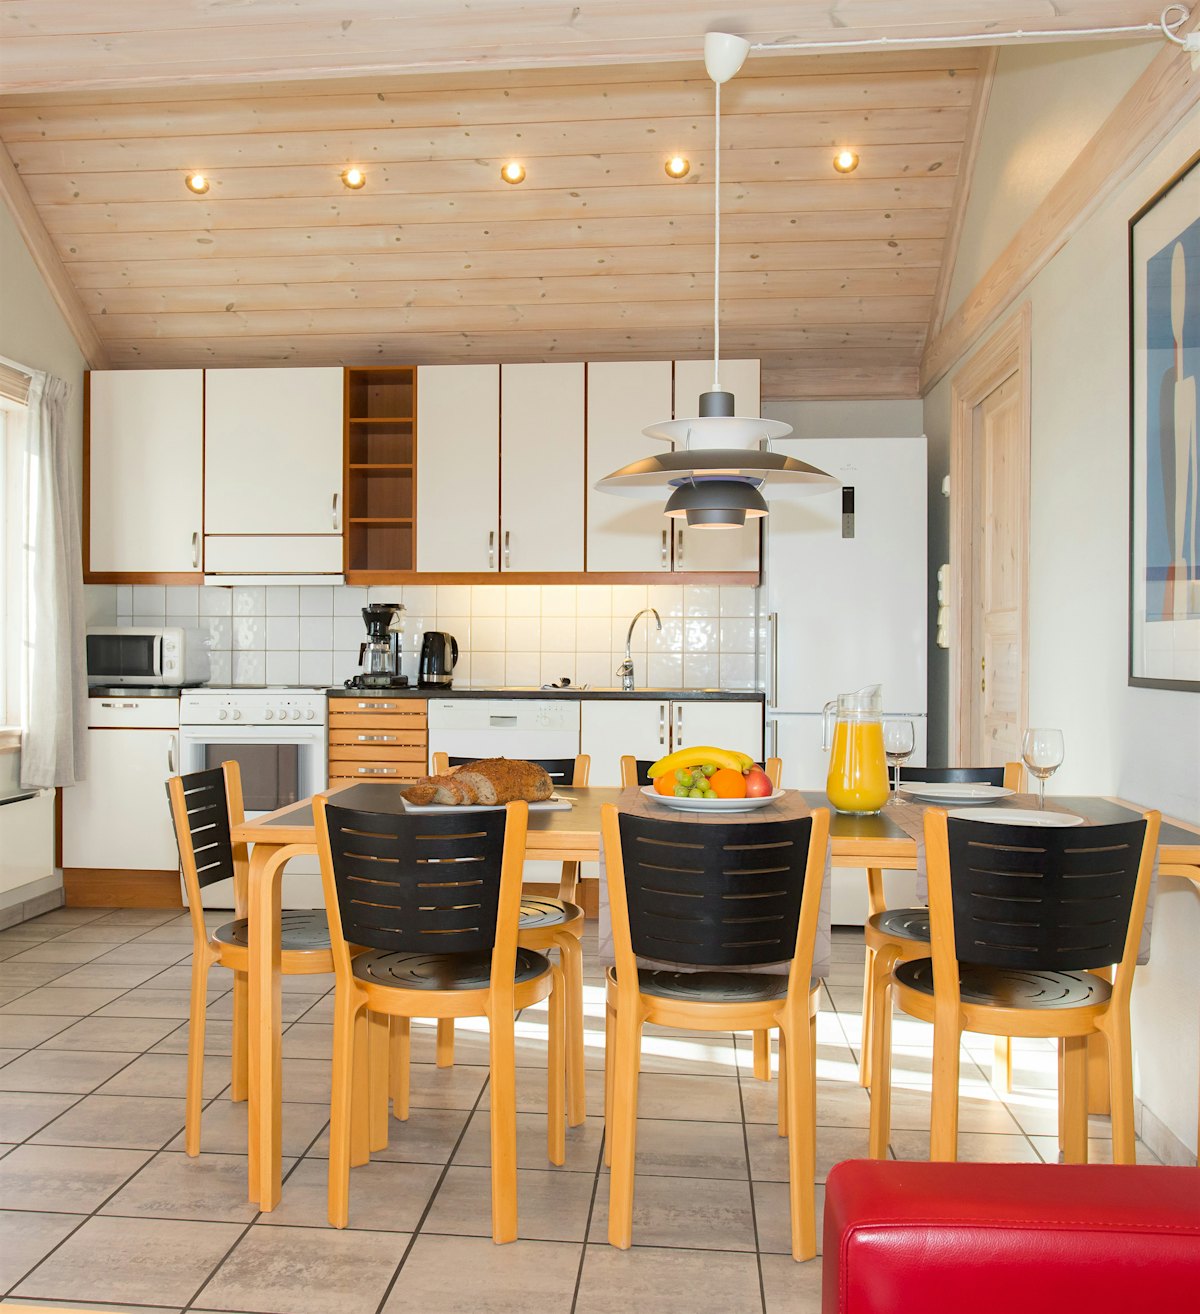 Großer offener Raum mit Küche und Esstisch. Der Tisch ist mit Obstplatten, Brot und Getränken gedeckt. Foto